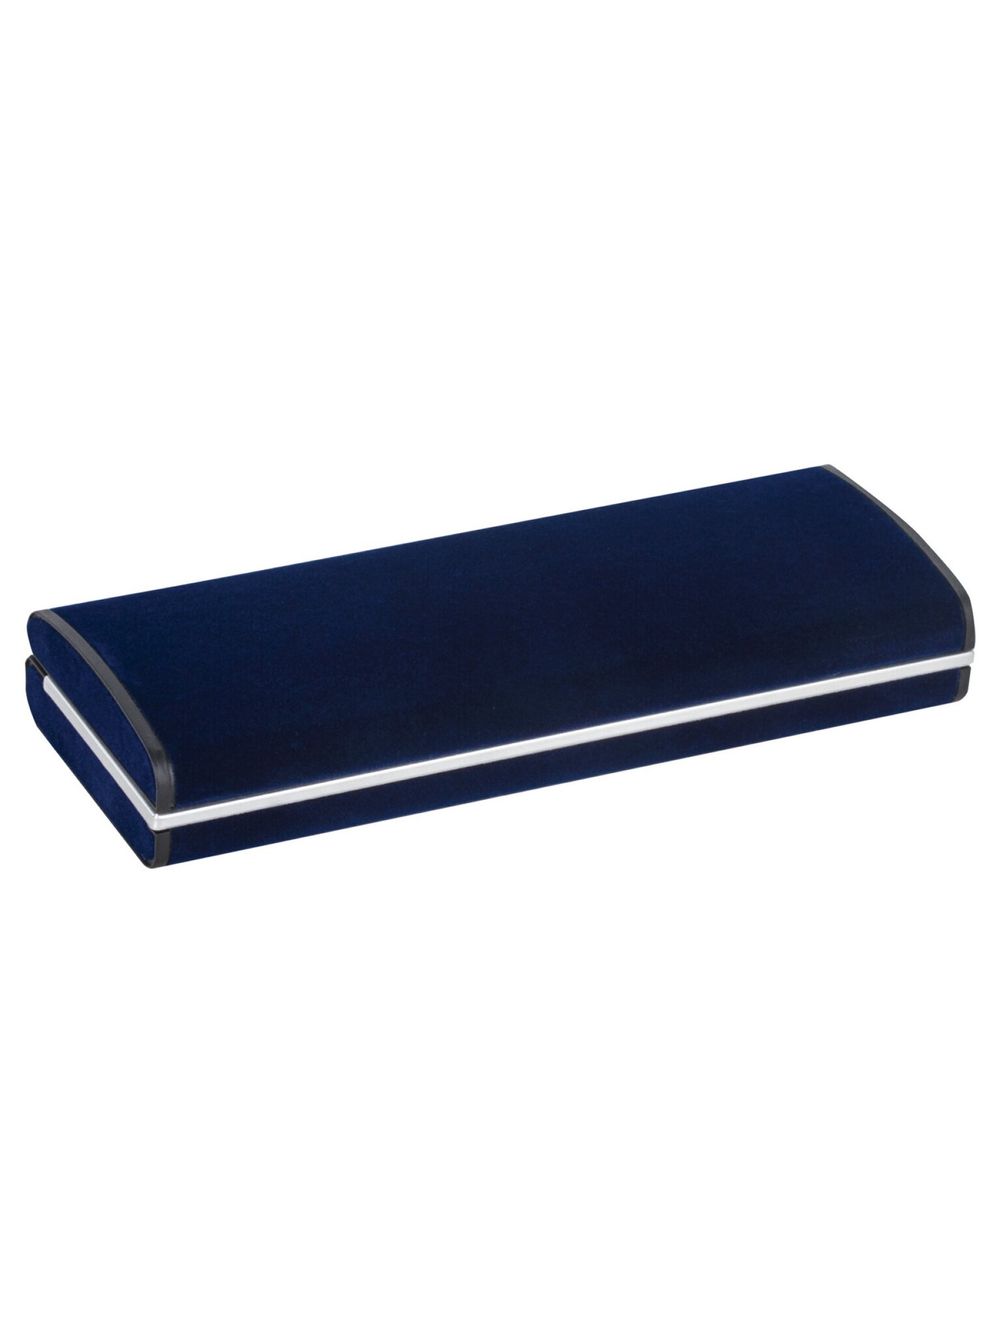 Ручка шариковая Galant "Arrow Chrome Grey" синяя, 0,7мм, поворотная, подарочная упаковка